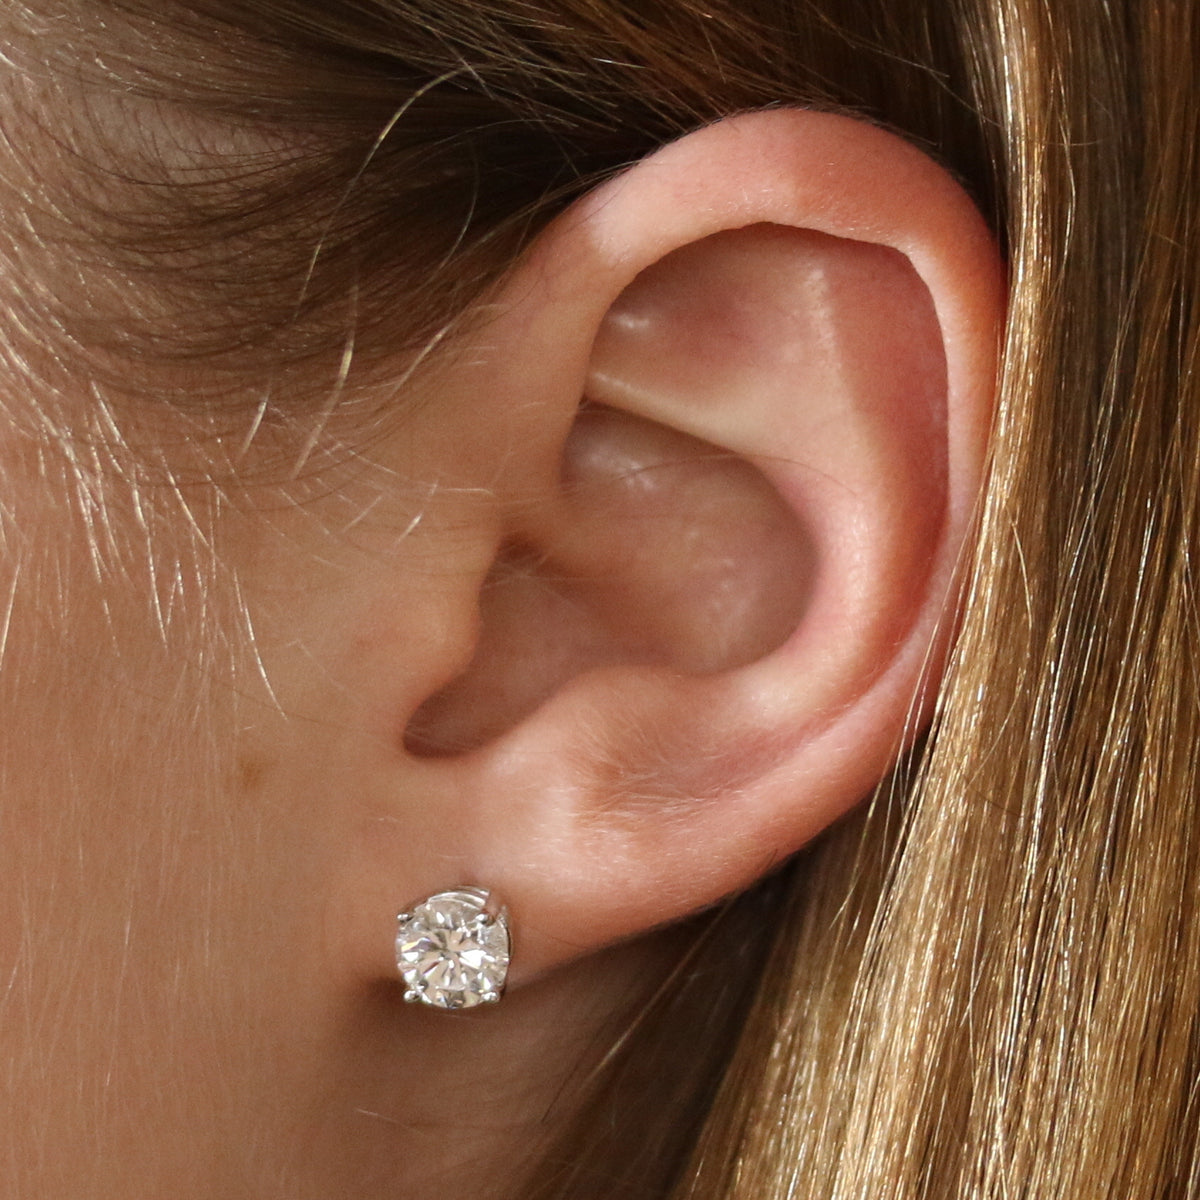 Diamond Earrings 2.03ctw